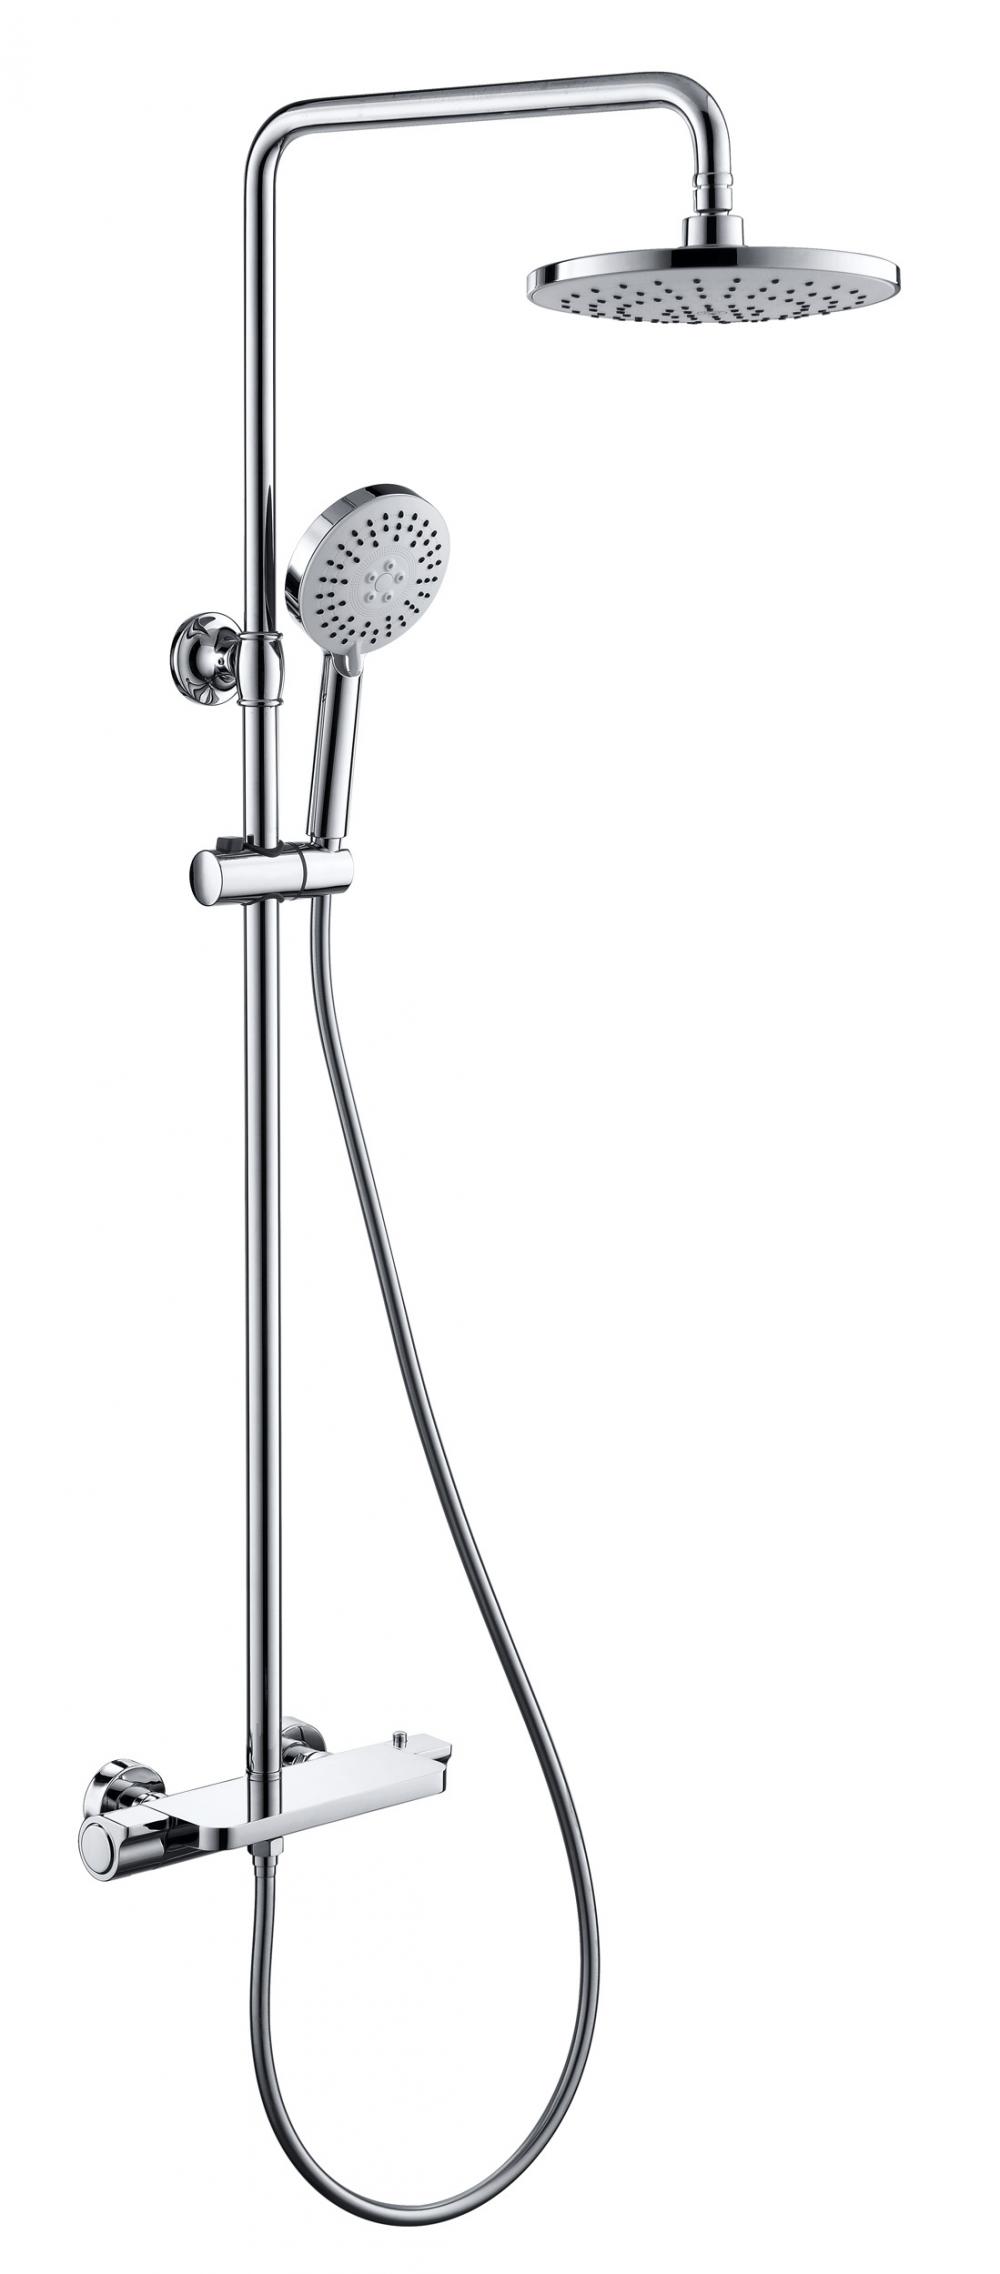 Kudalulwe ama-armostatic shower faucets egumbini lokugezela